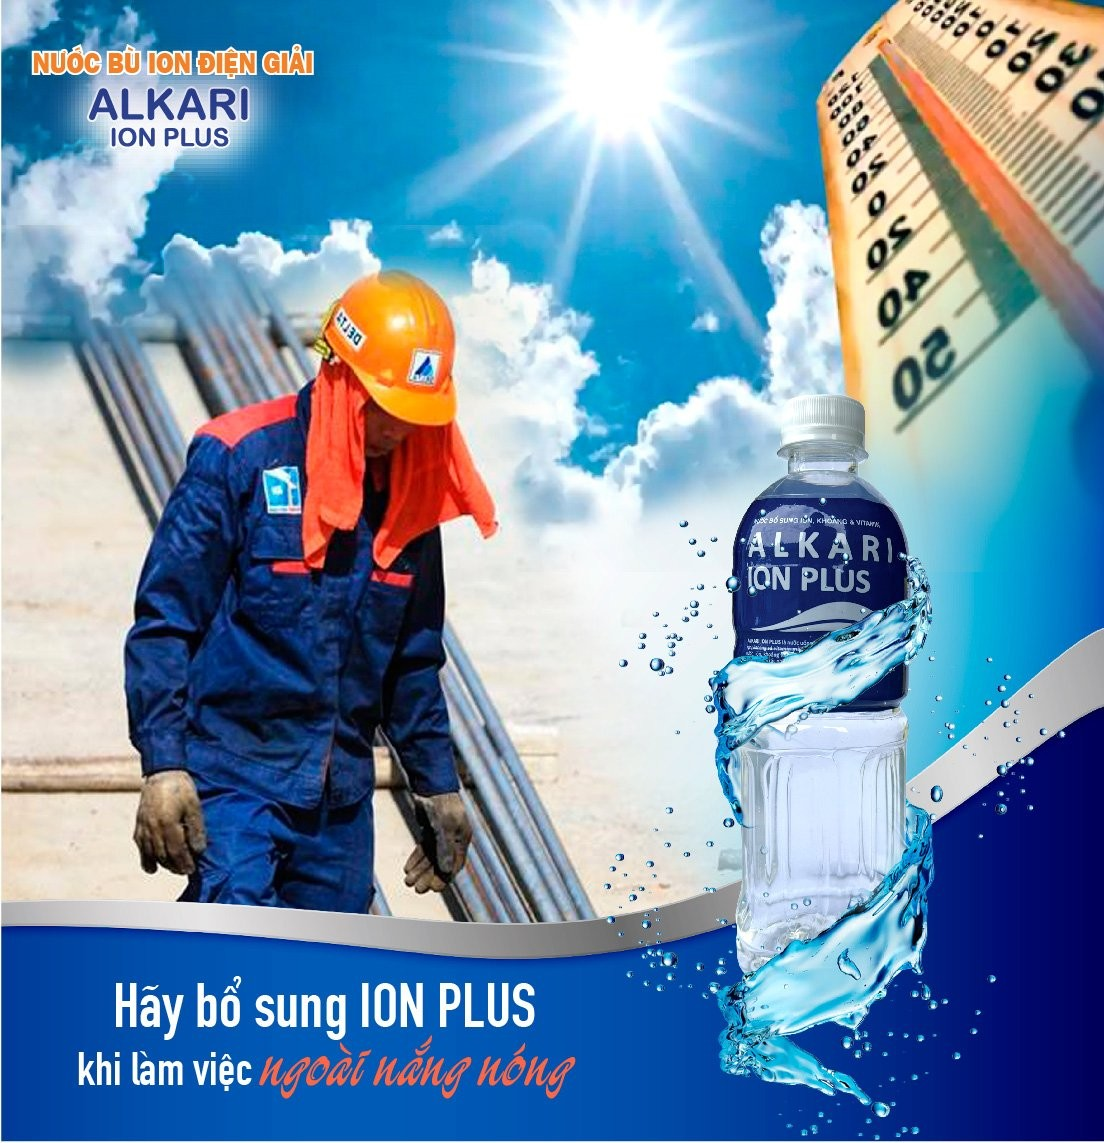 Những dấu hiệu cảnh báo cơ thể đang mất nước - Bổ sung Alkari Ion Plus bù nước, bù điện giải - 4